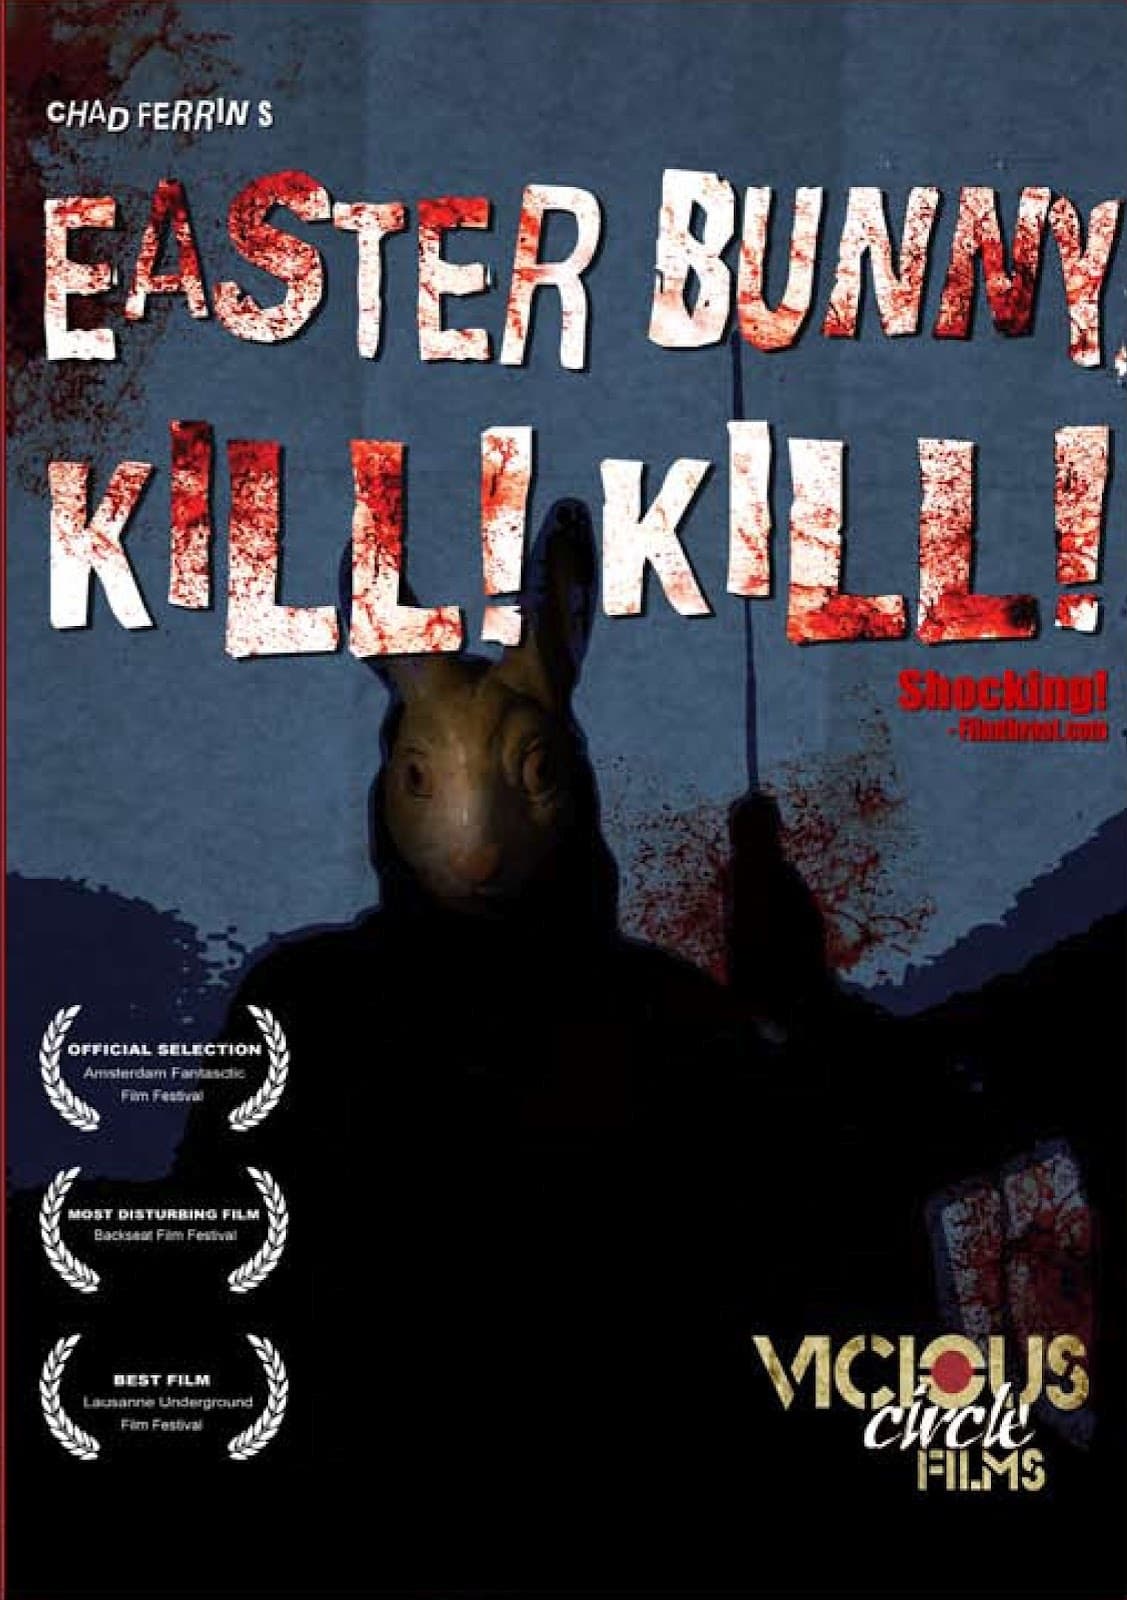 Easter Bunny Kill! Kill!